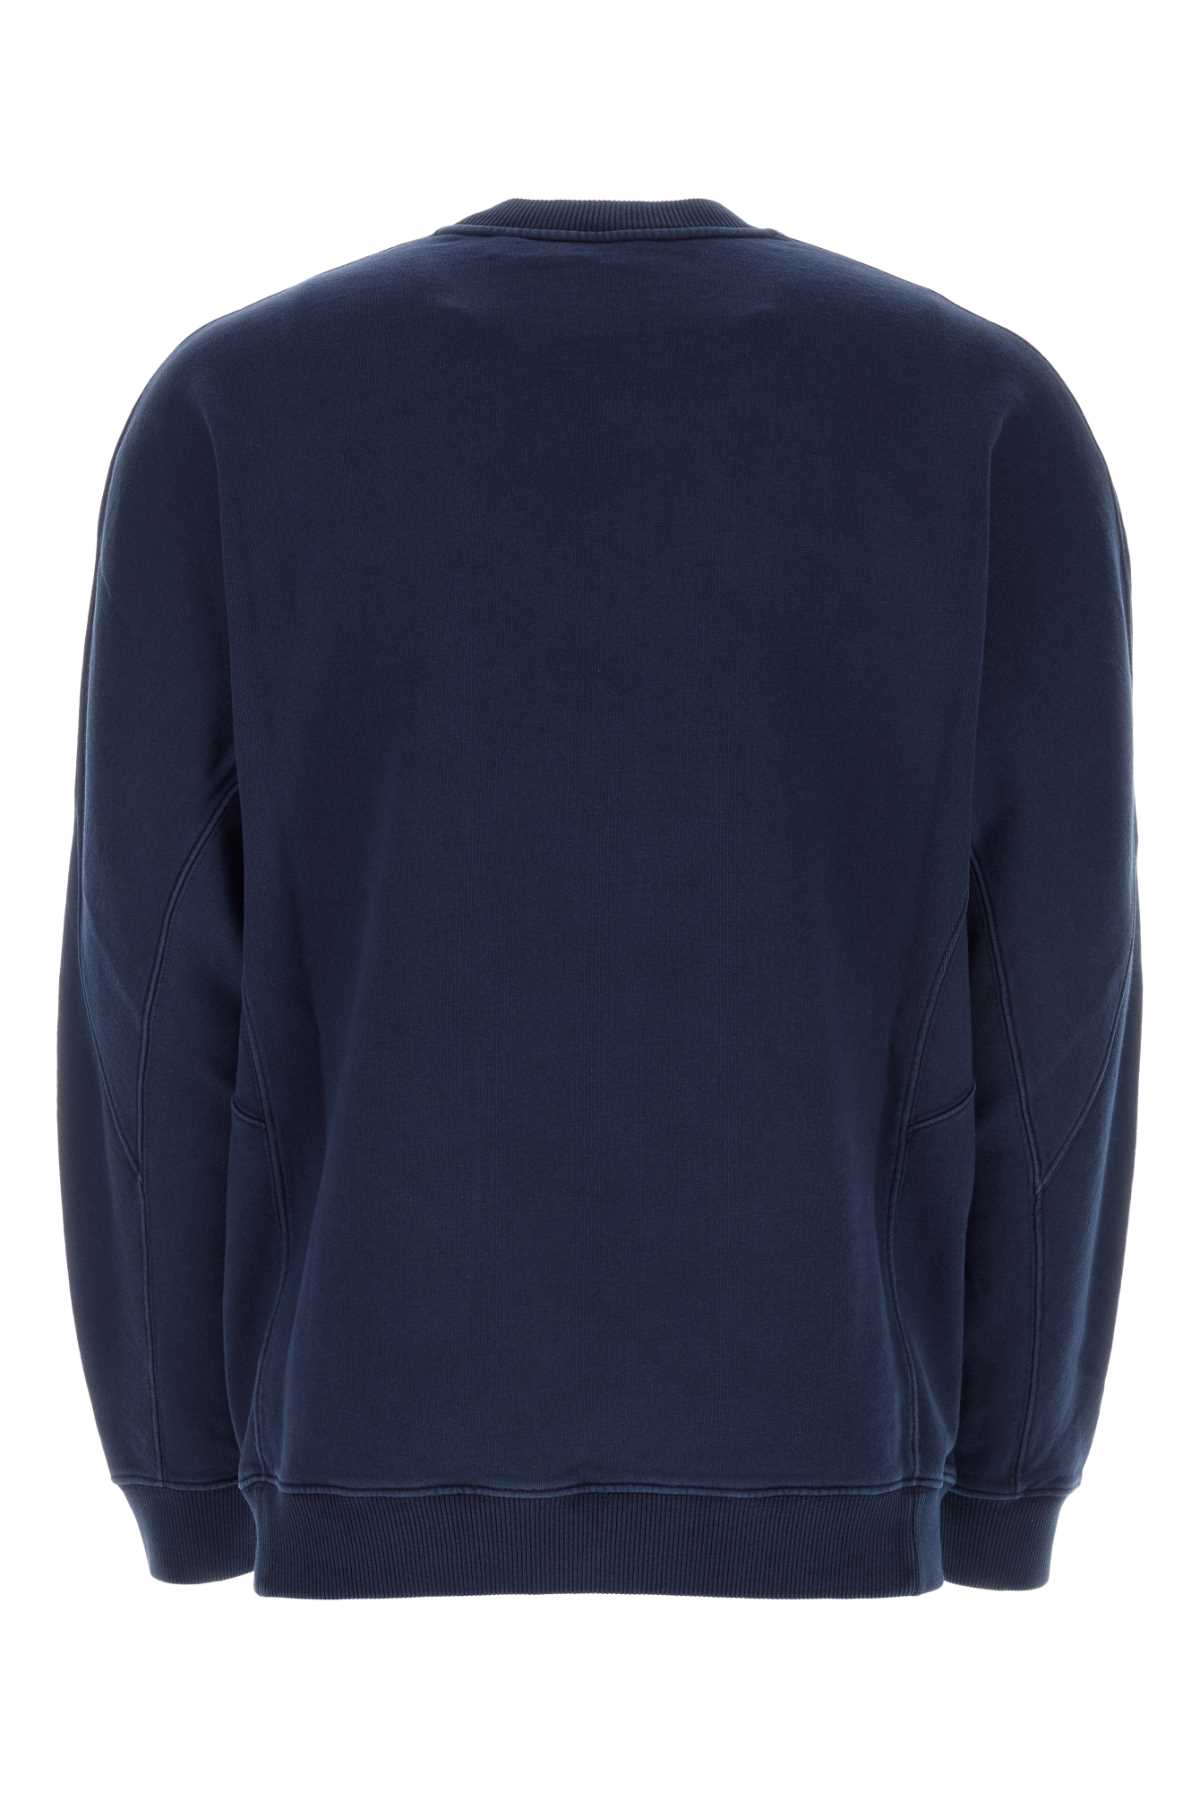 Shop Burberry Navy Blue Cotton Oversize Sweatshirt In Twilightnavy